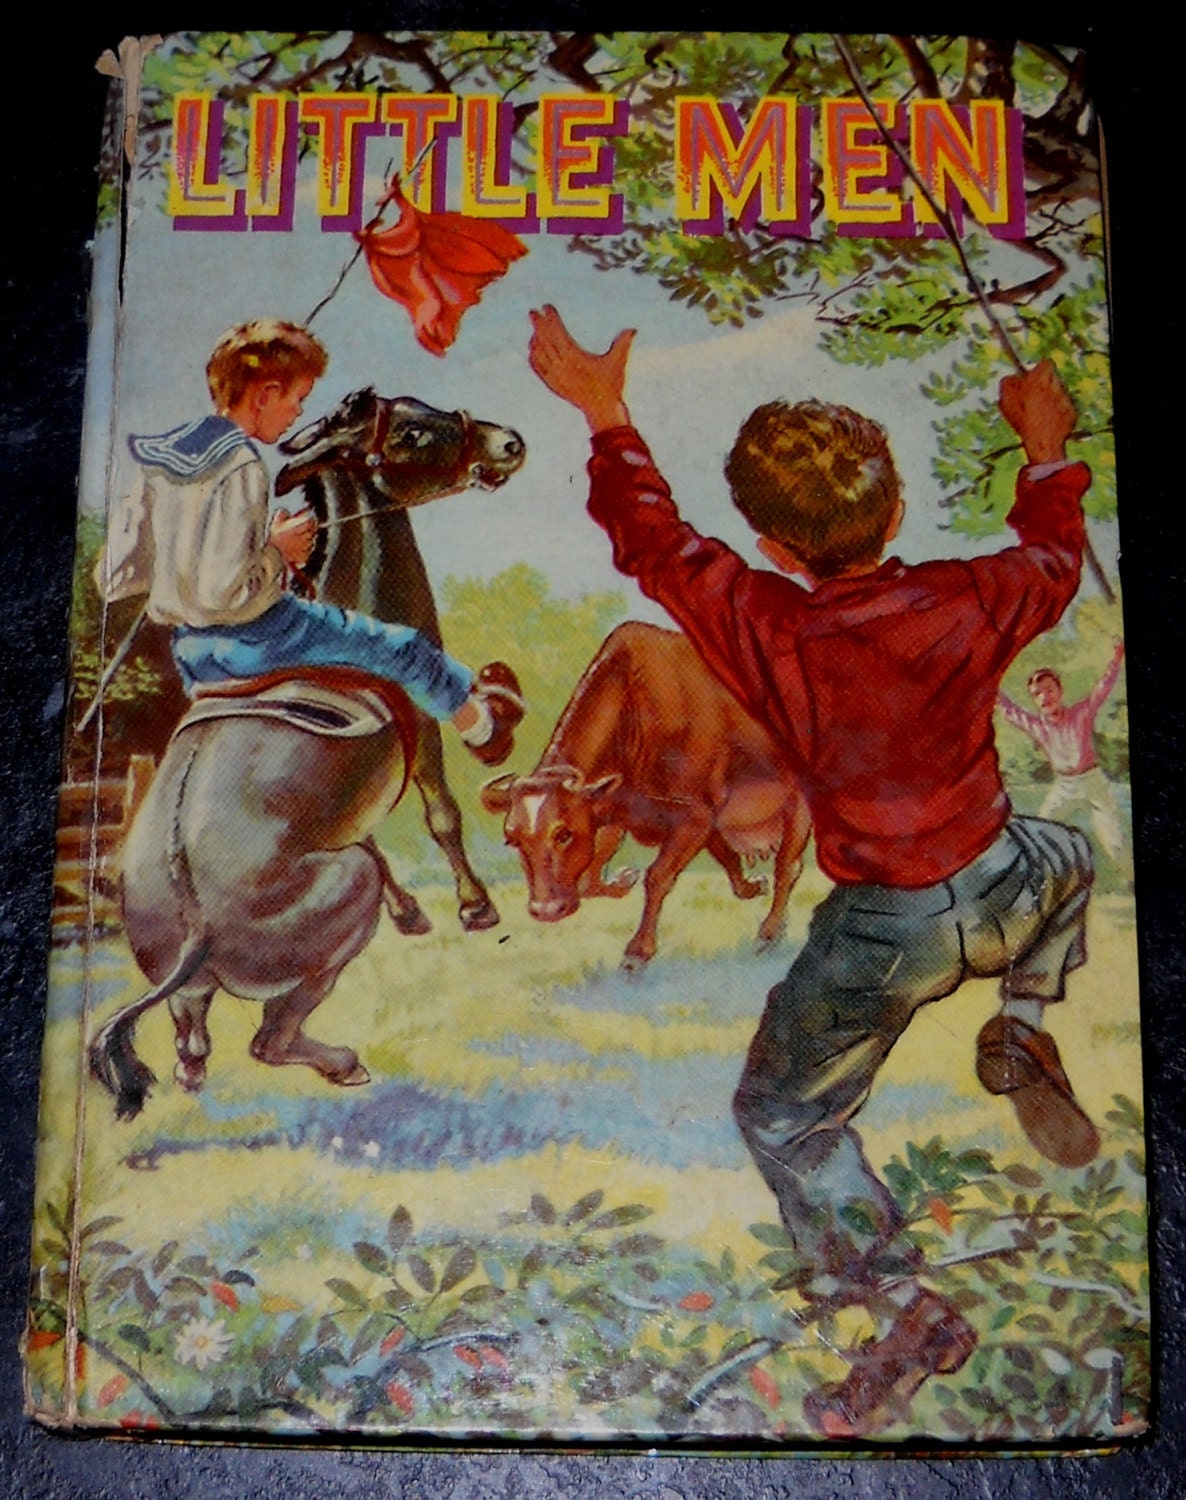 the book little men